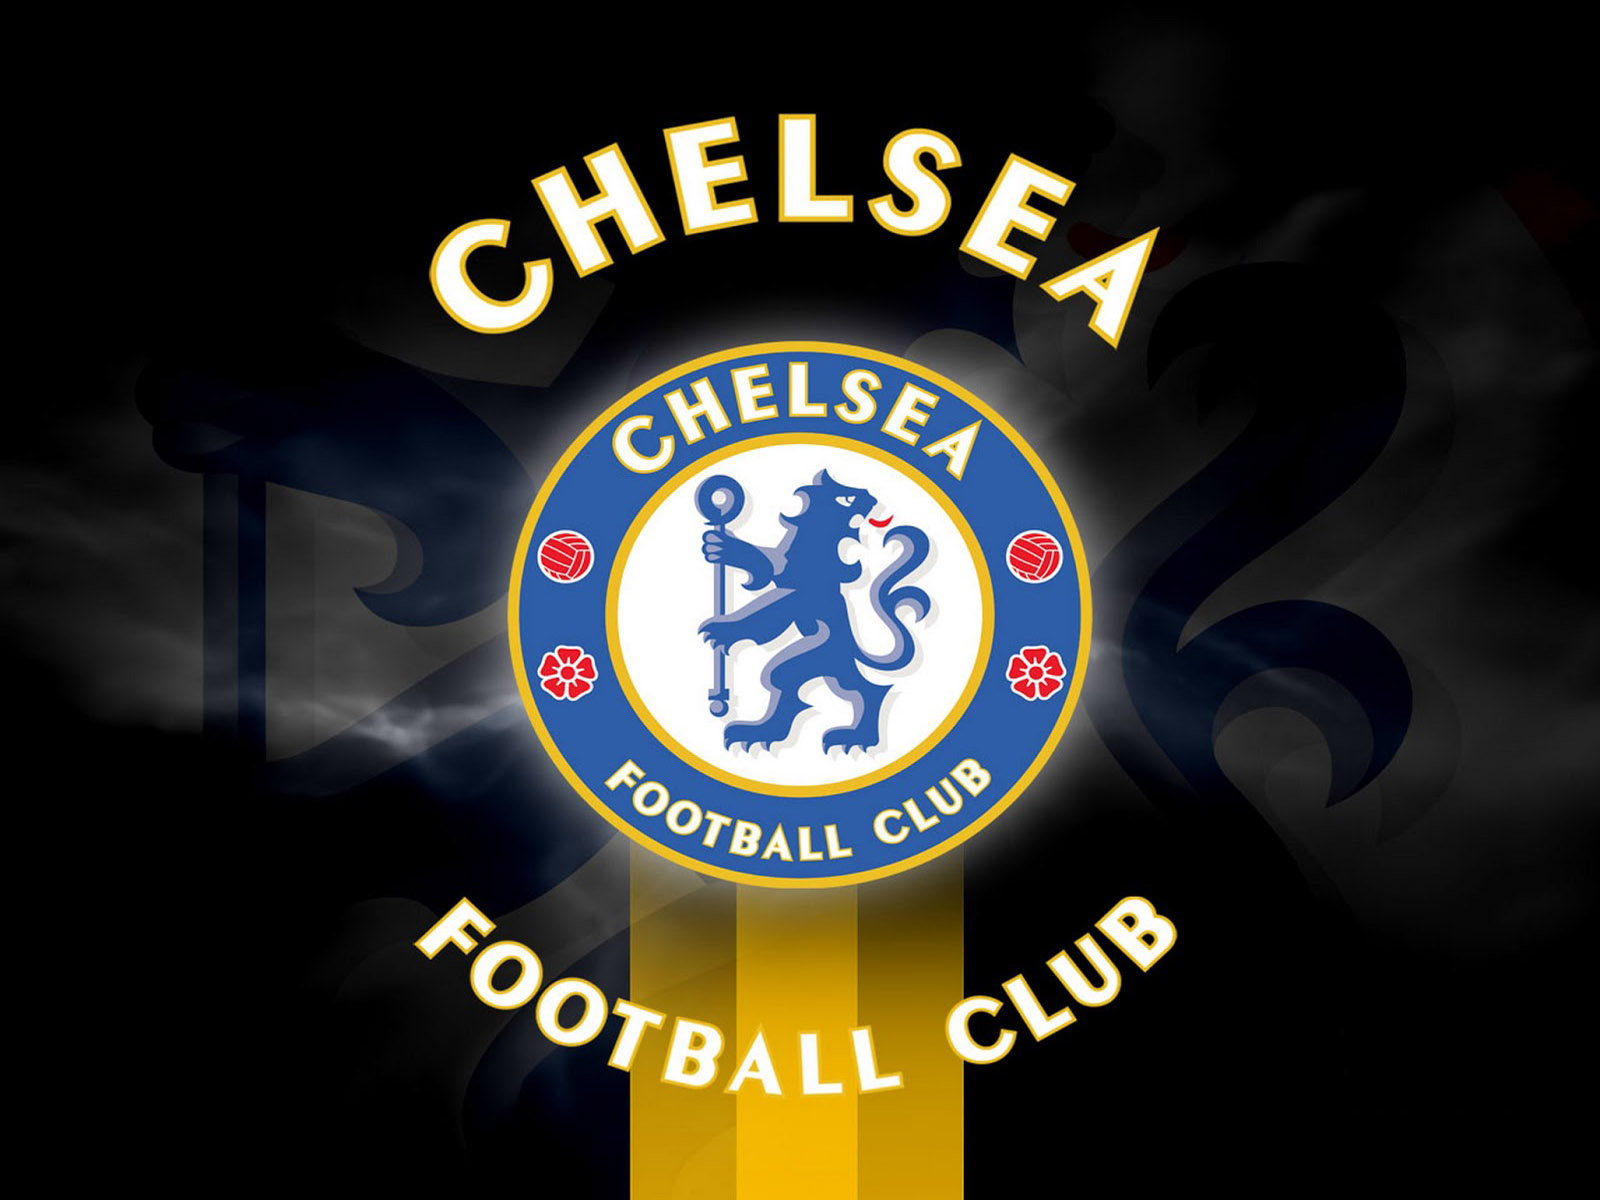 Chelsea FC twitter